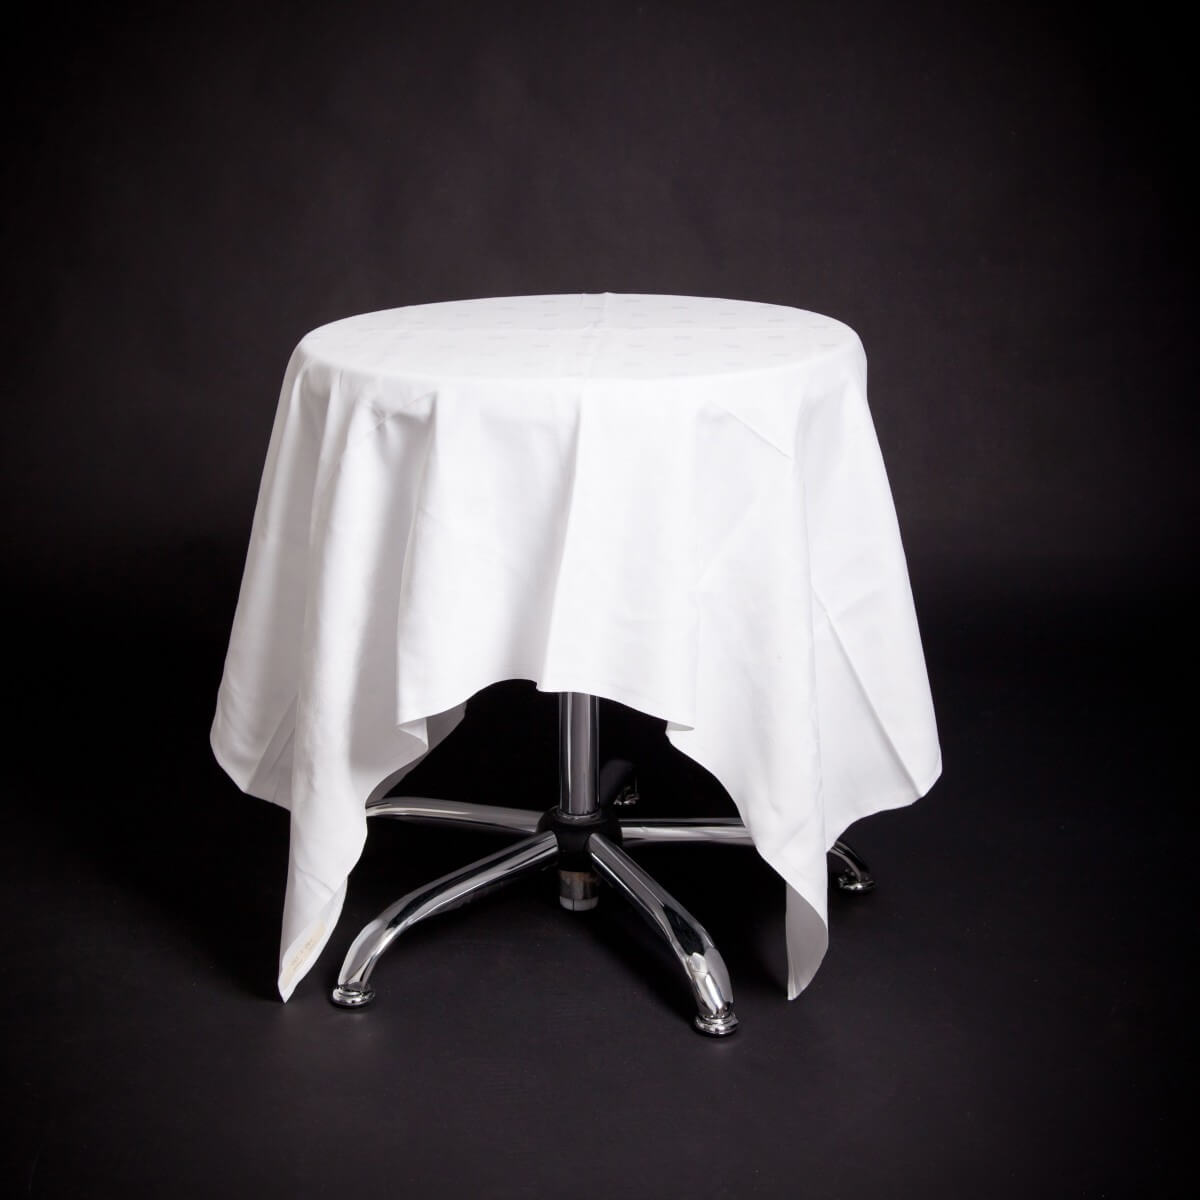 Cafèbord med hvit duk (140x140cm).